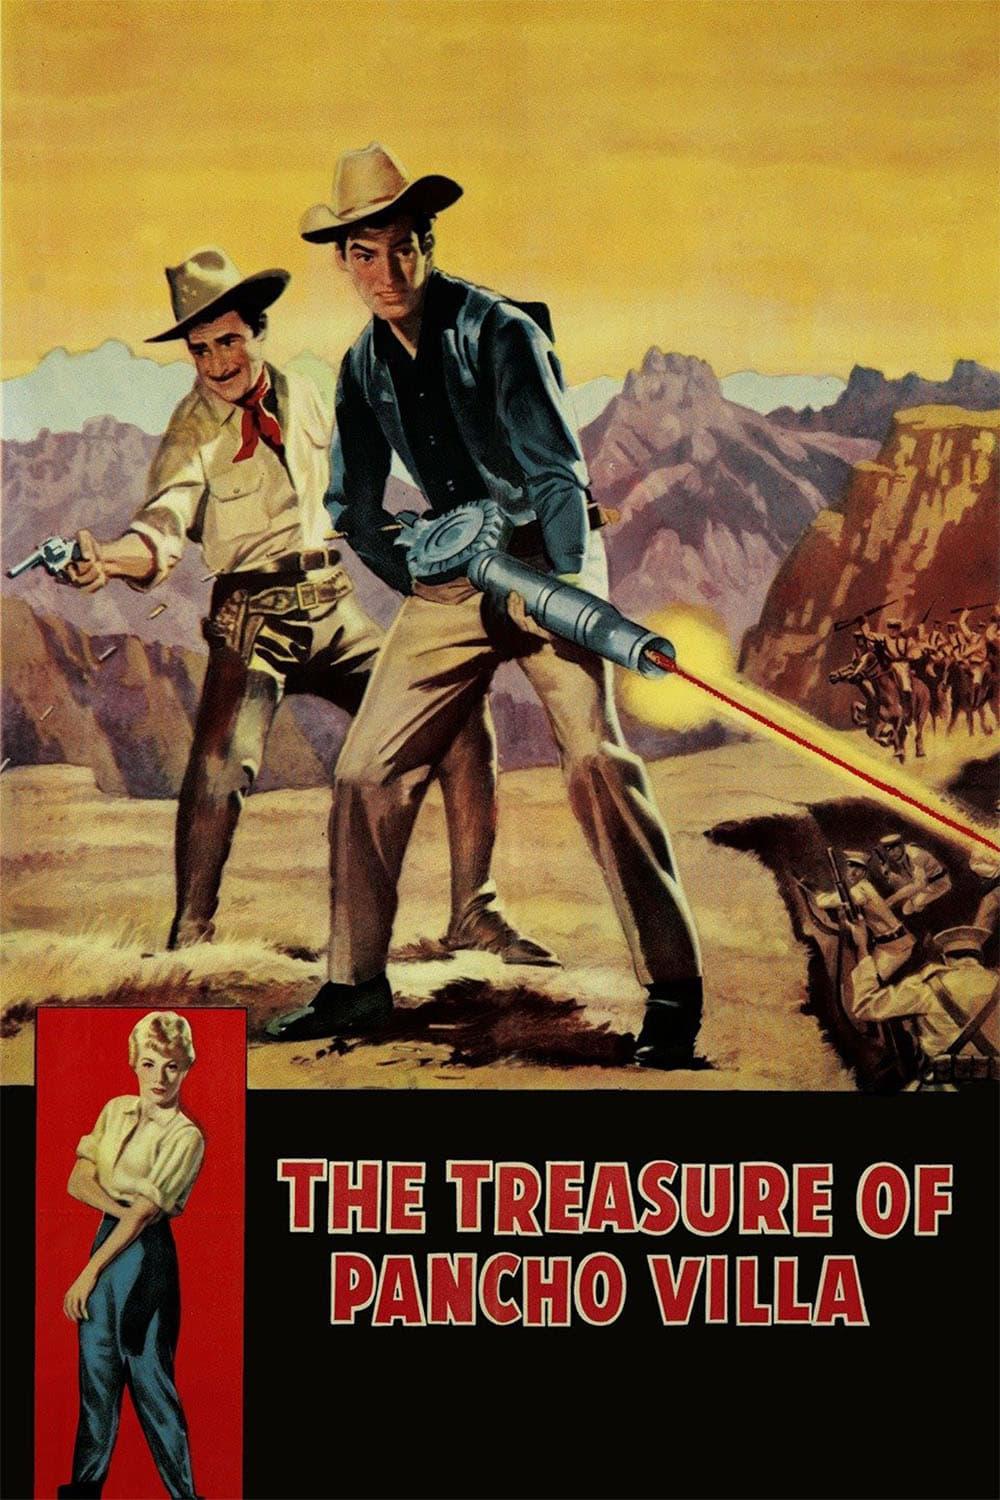 The Treasure of Pancho Villa poster